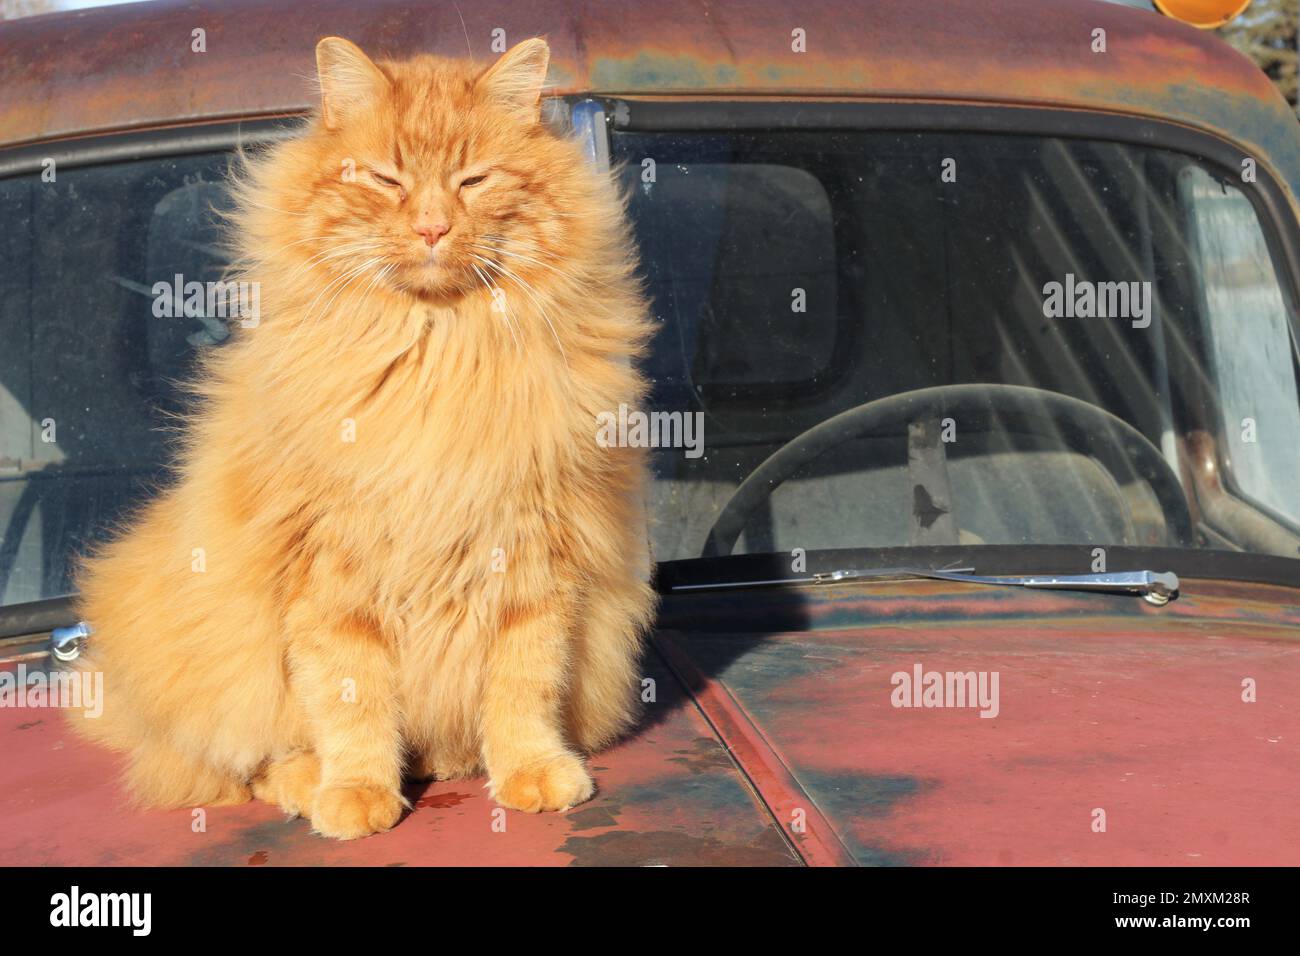 Un lion à poil long comme un chat orange assis sur le capot d'un vieux camion. Banque D'Images